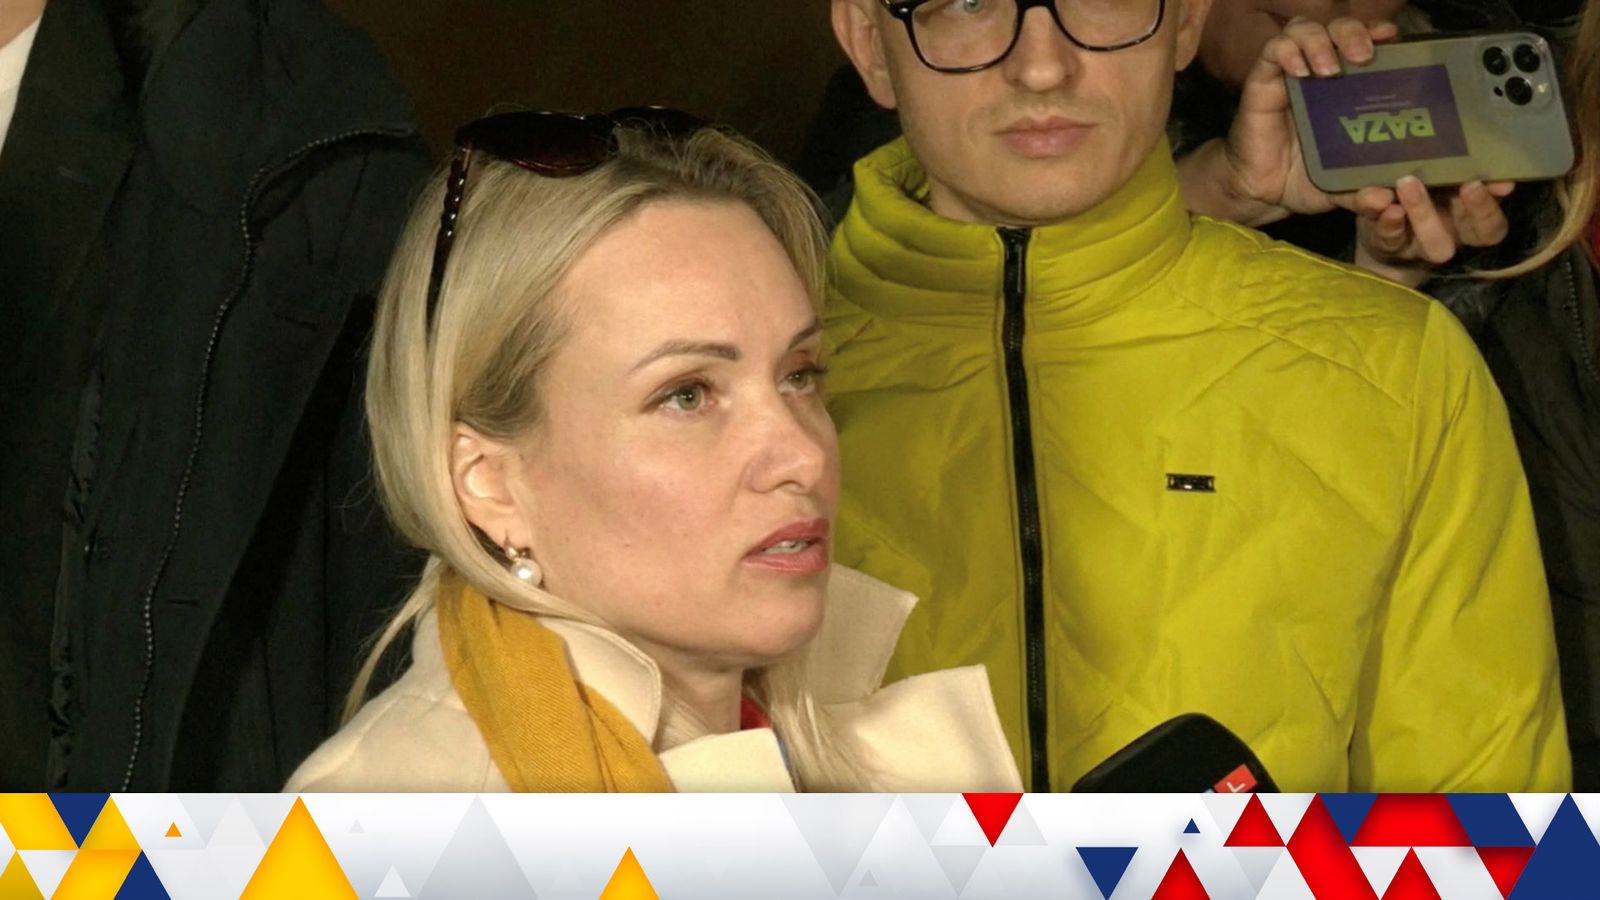 La journaliste russe Marina Ovsyannikova qui a protesté contre la guerre en Ukraine en direct à la télévision a perquisitionné son domicile |  Nouvelles du monde